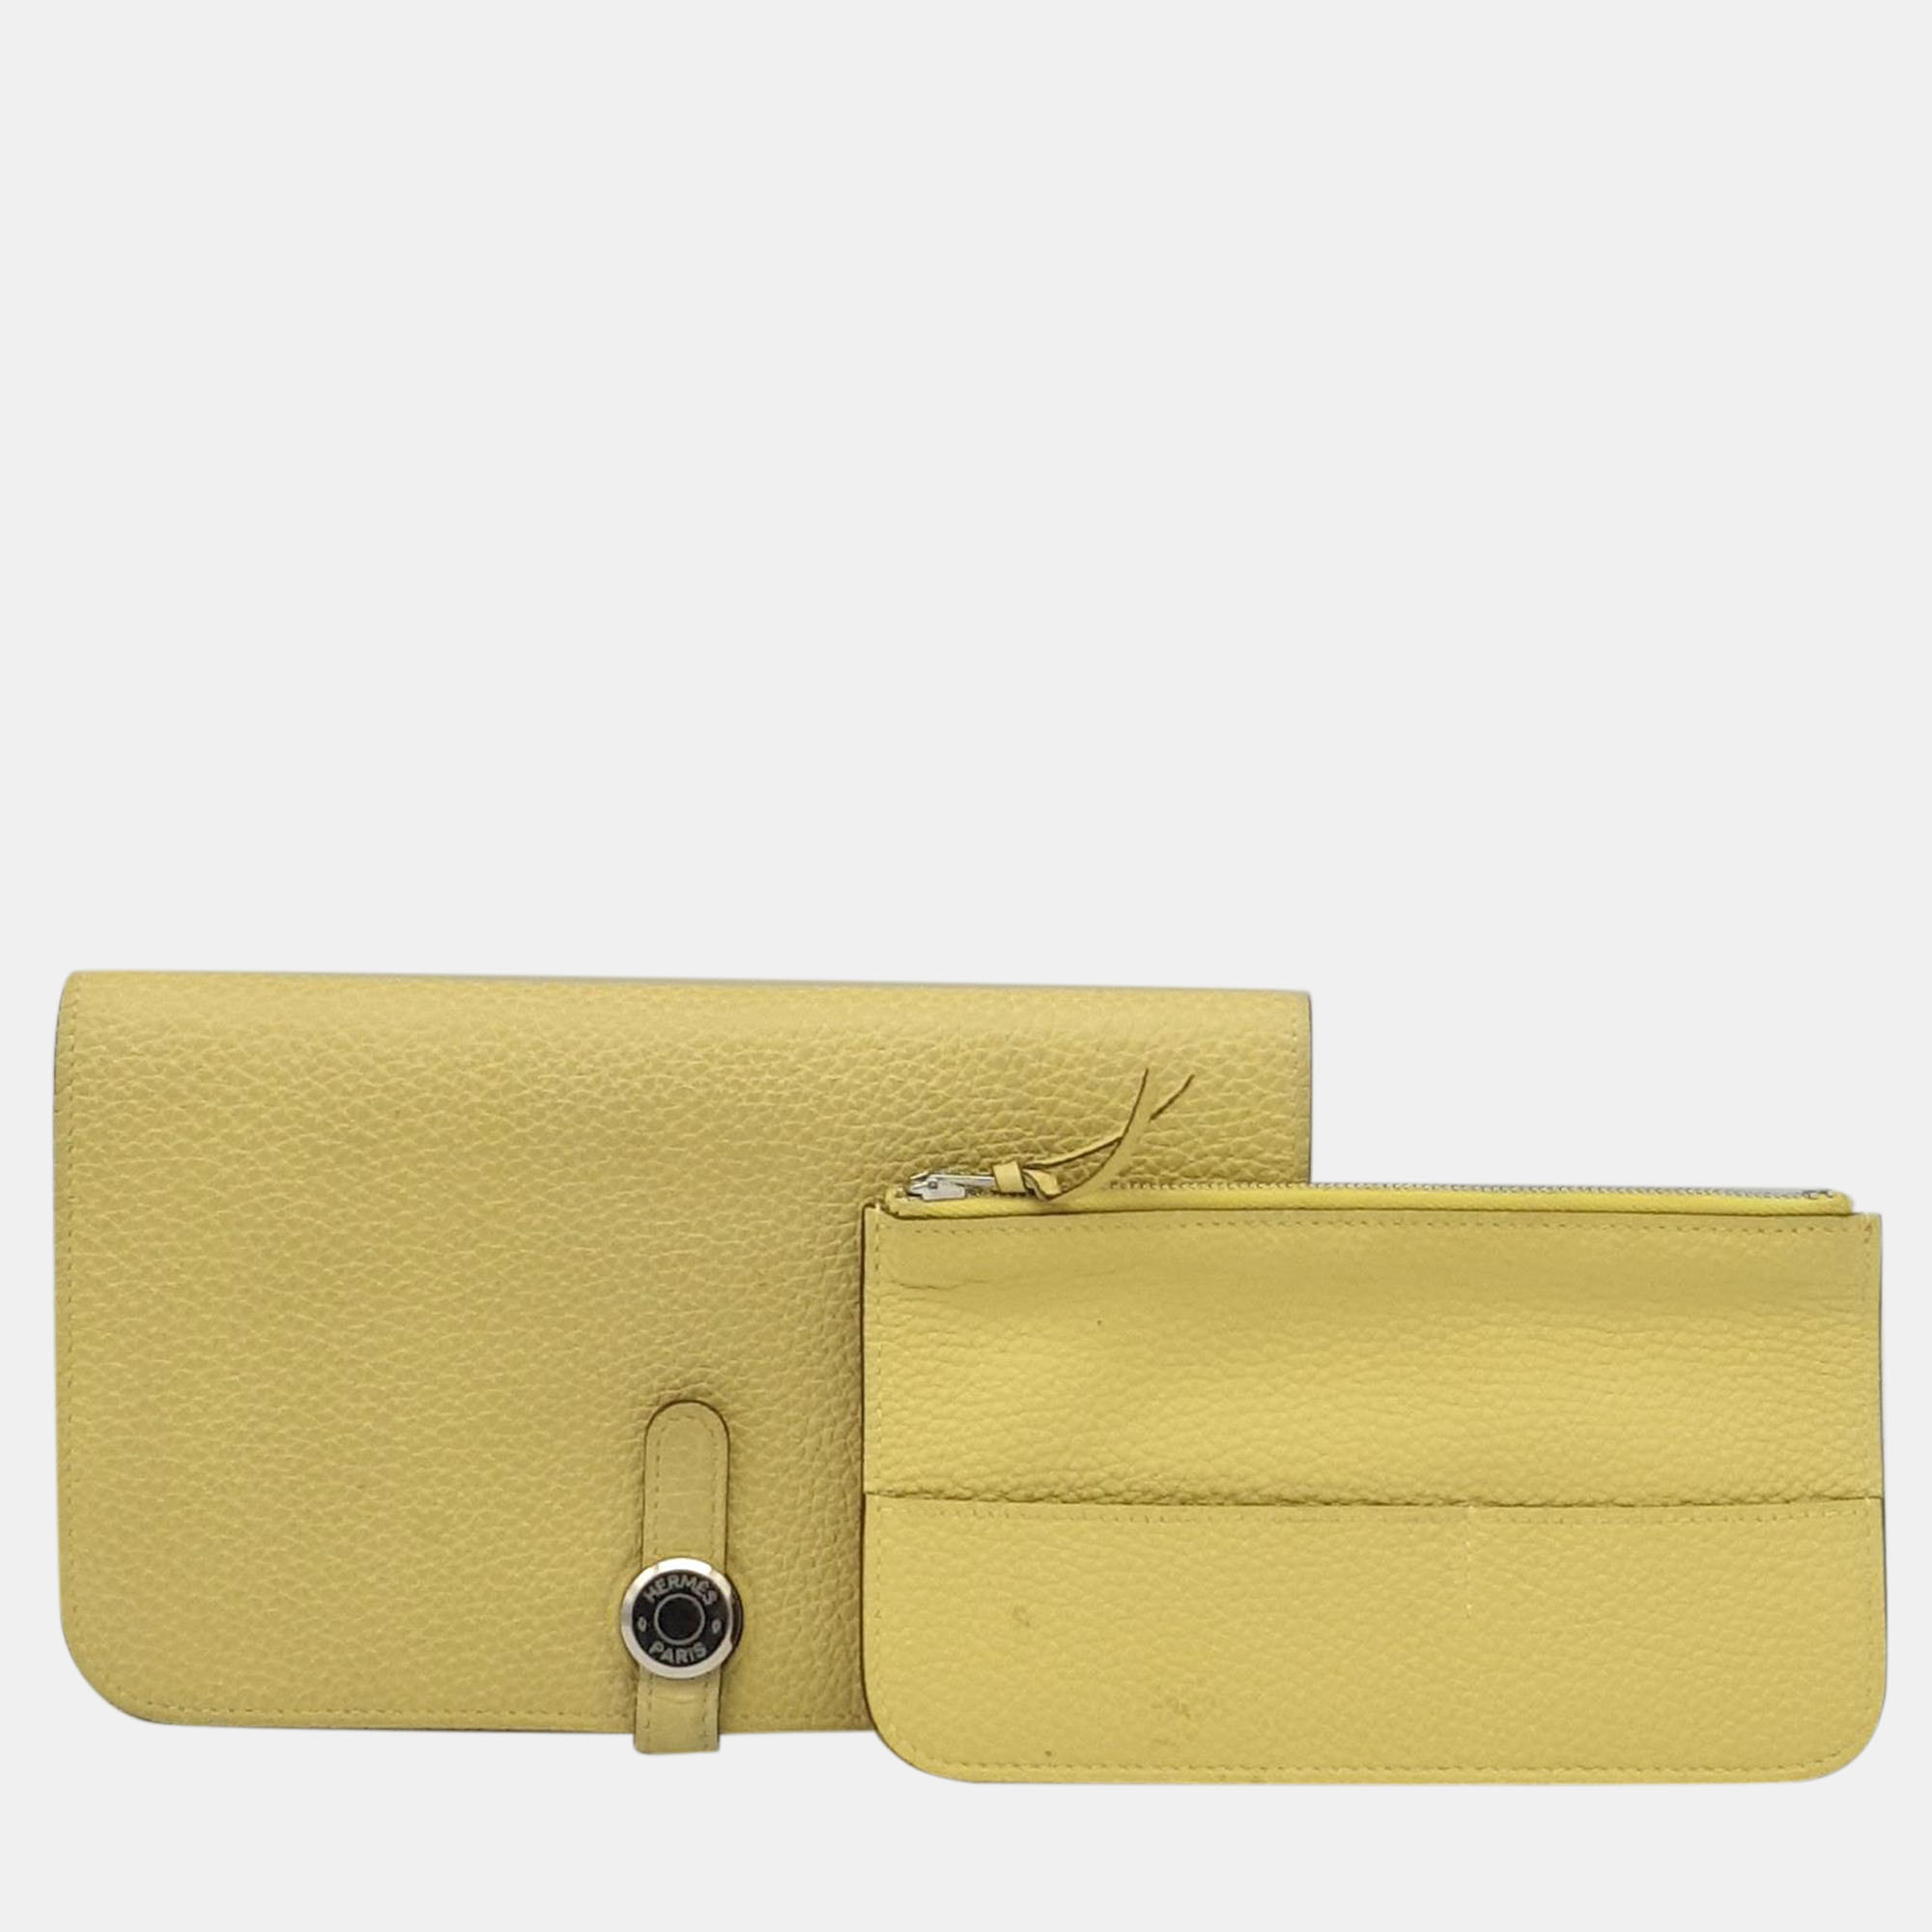 Hermes yellow epsom dogon long wallet